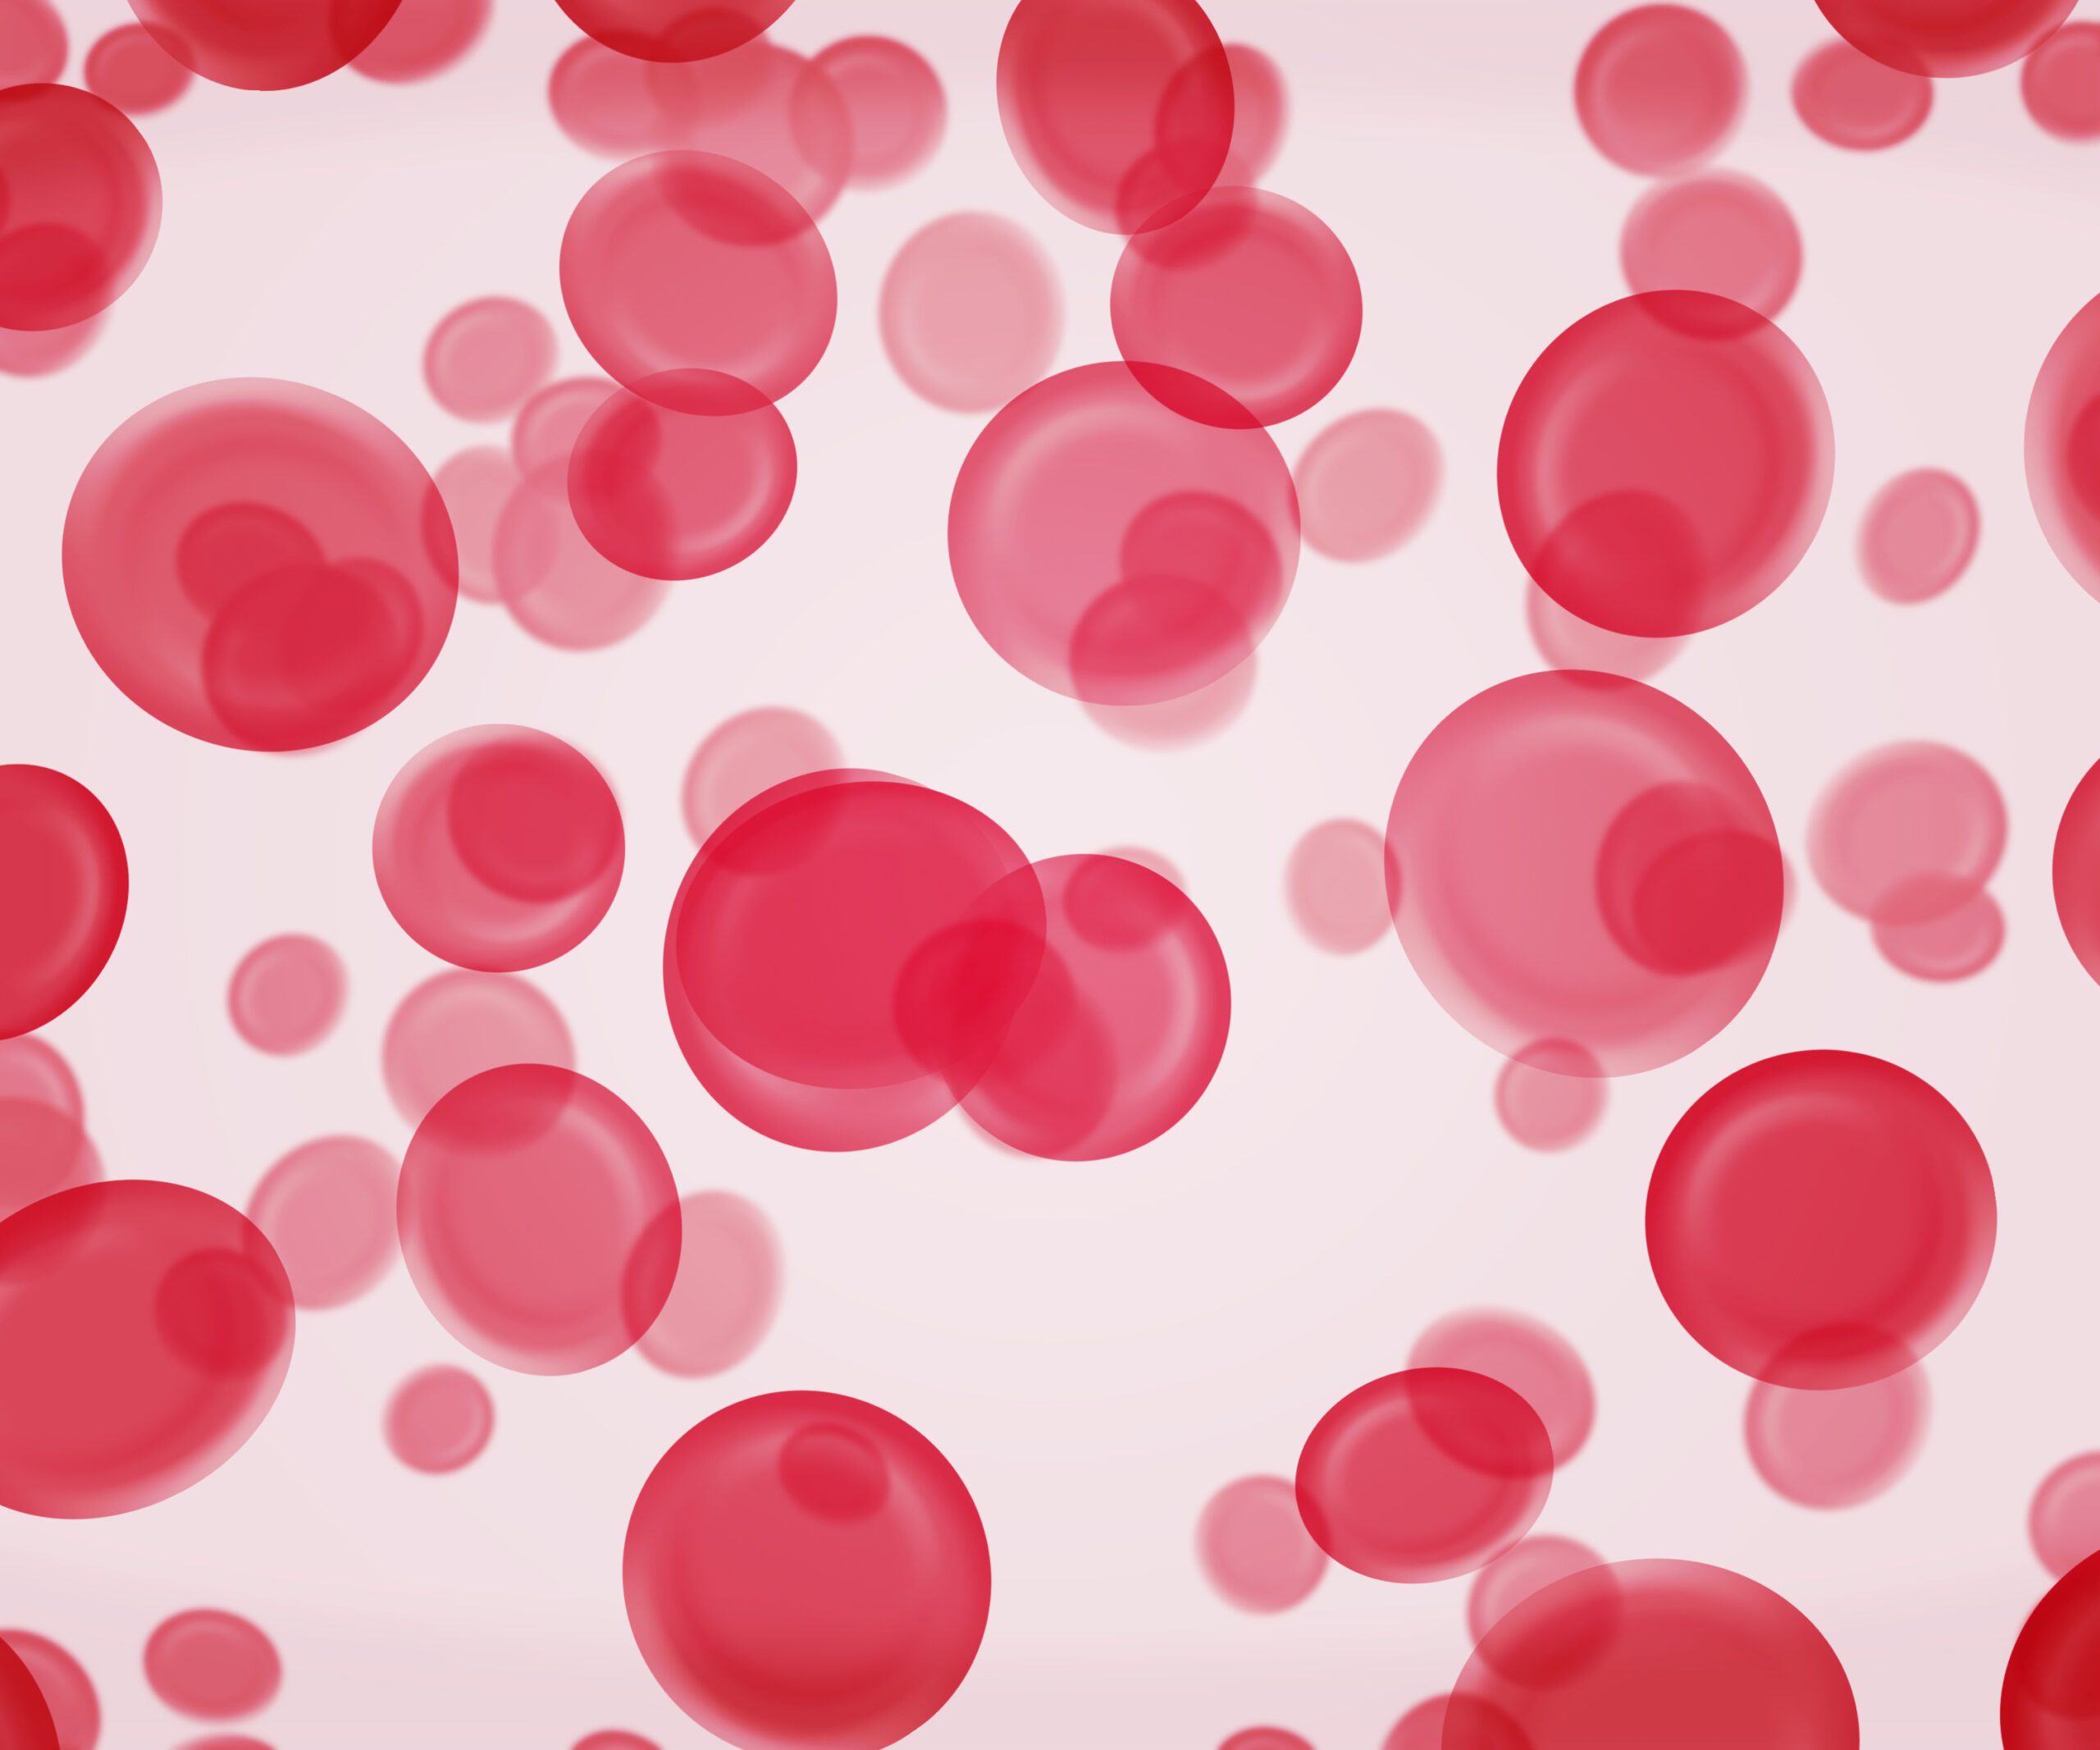 Transfusiones de sangre de cordón umbilical podría ser una mejora terapéutica en bebés prematuros